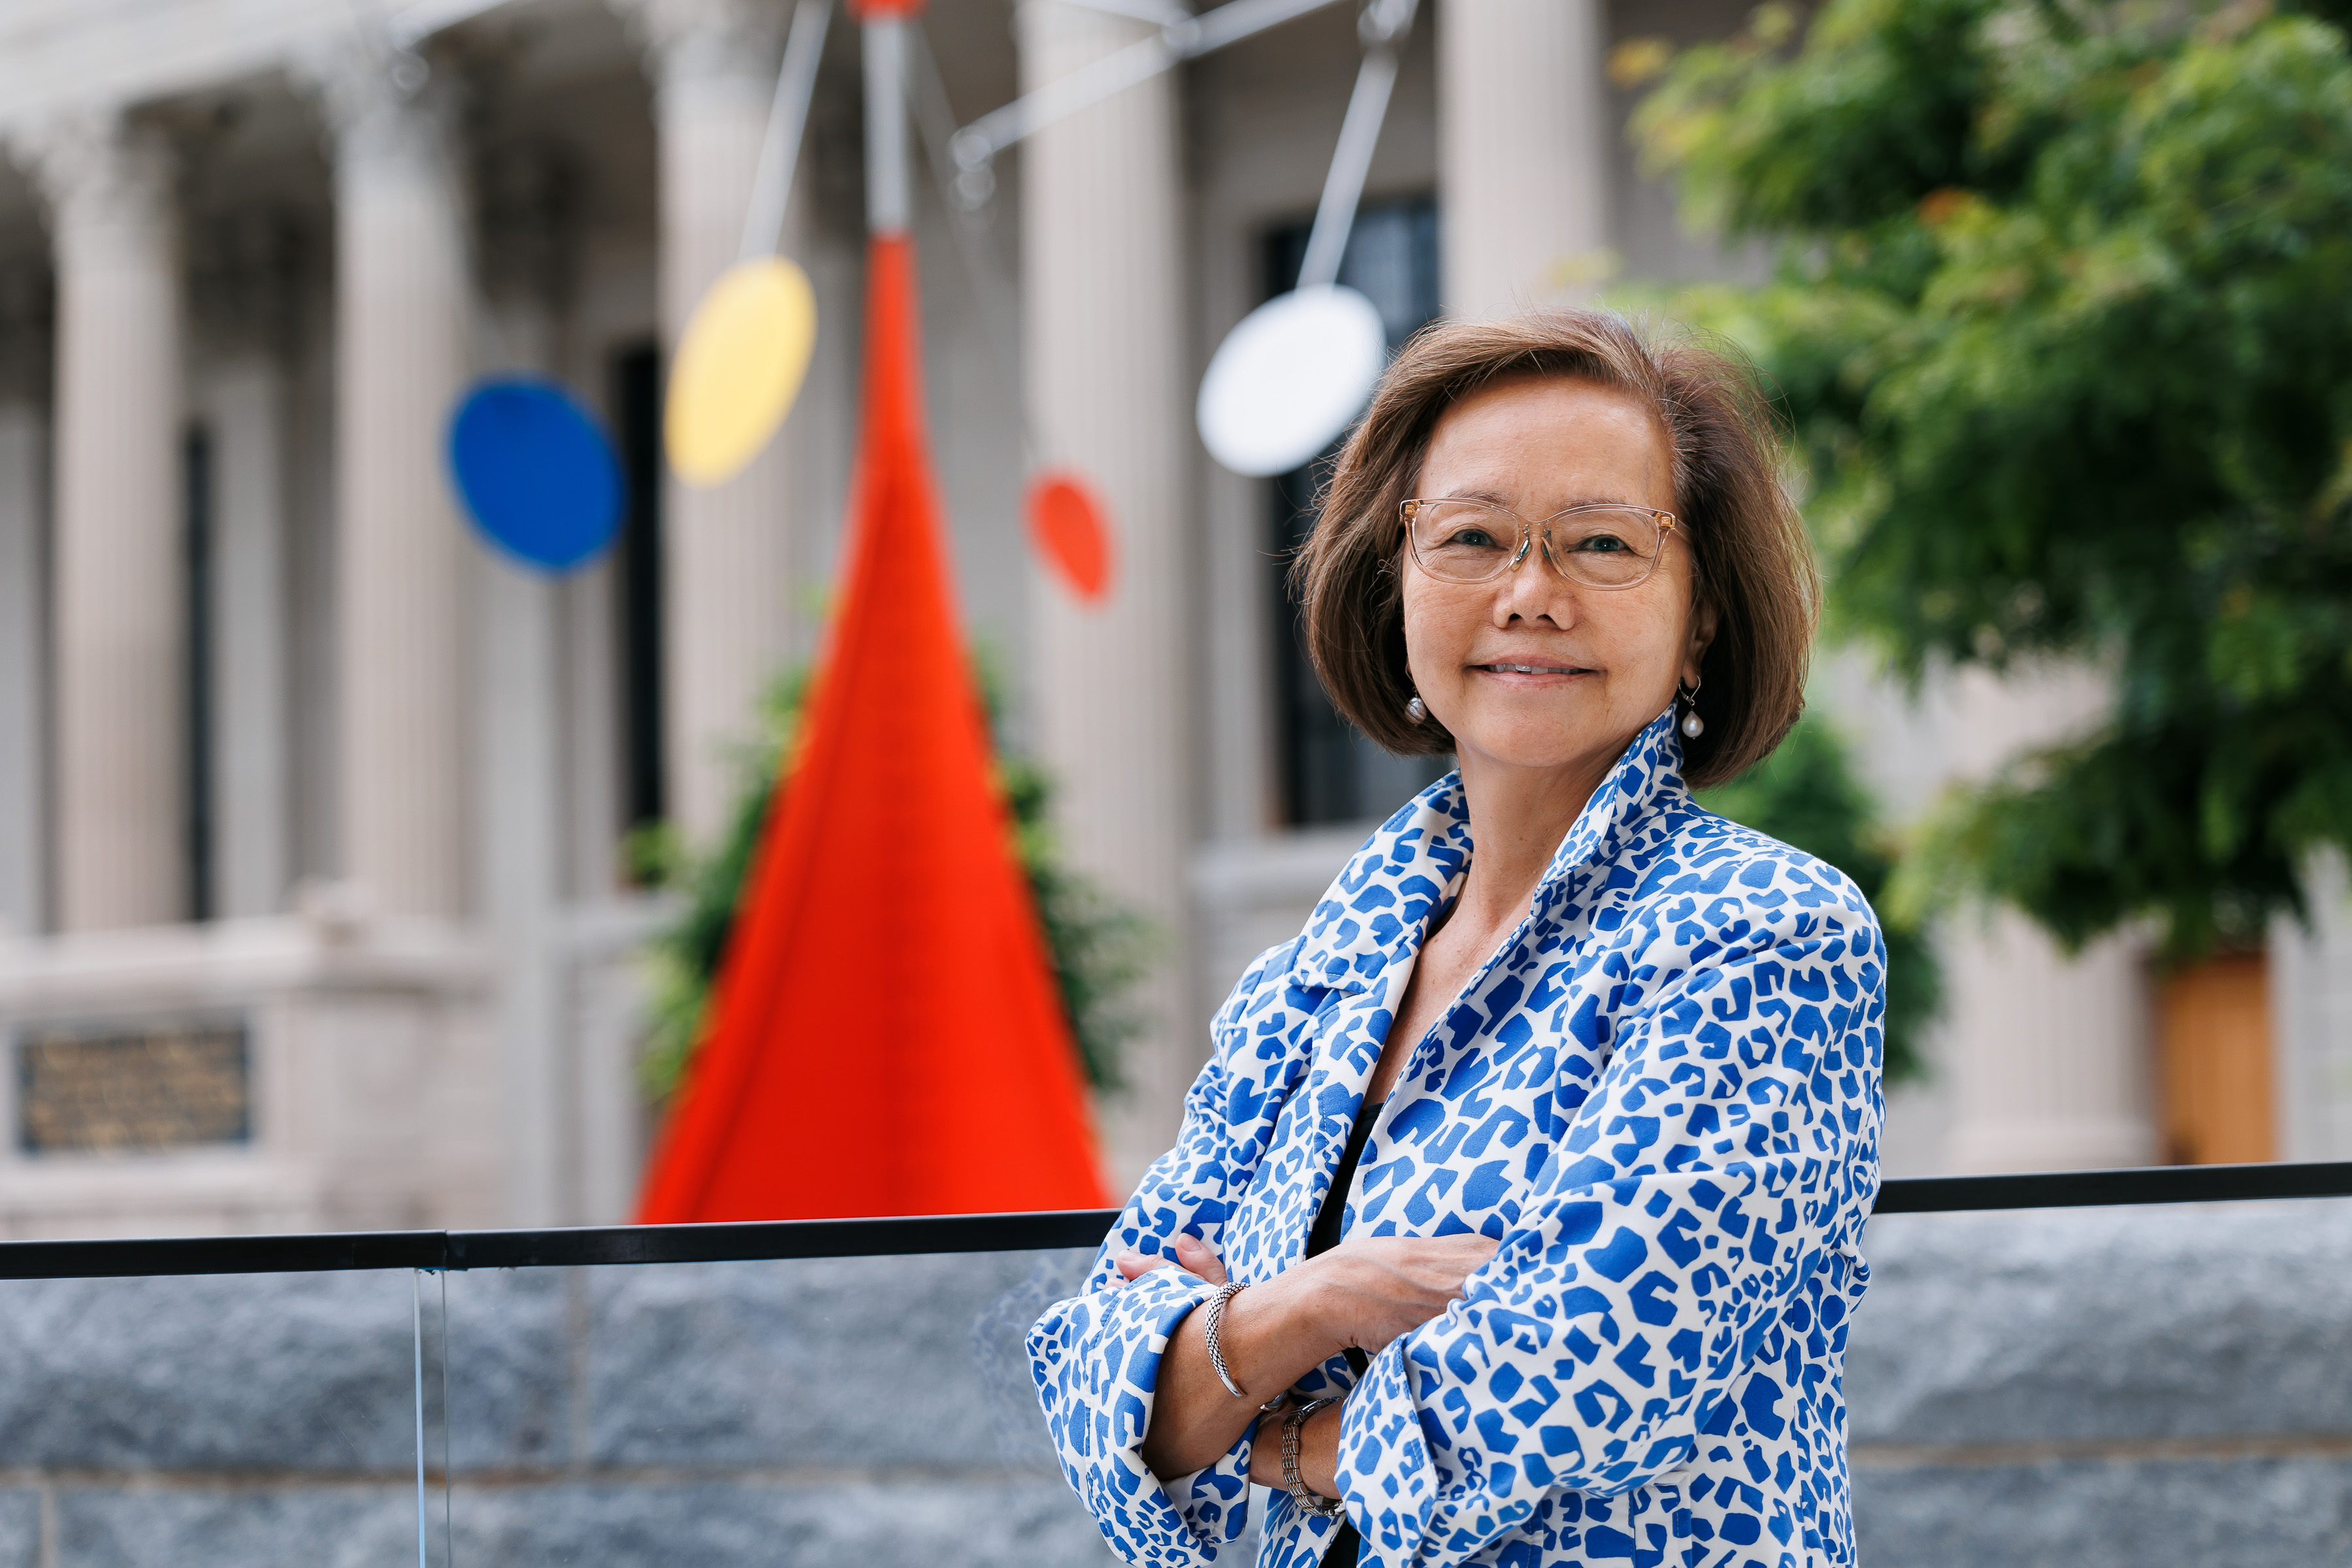 YAA Executive Director Weili Cheng '77